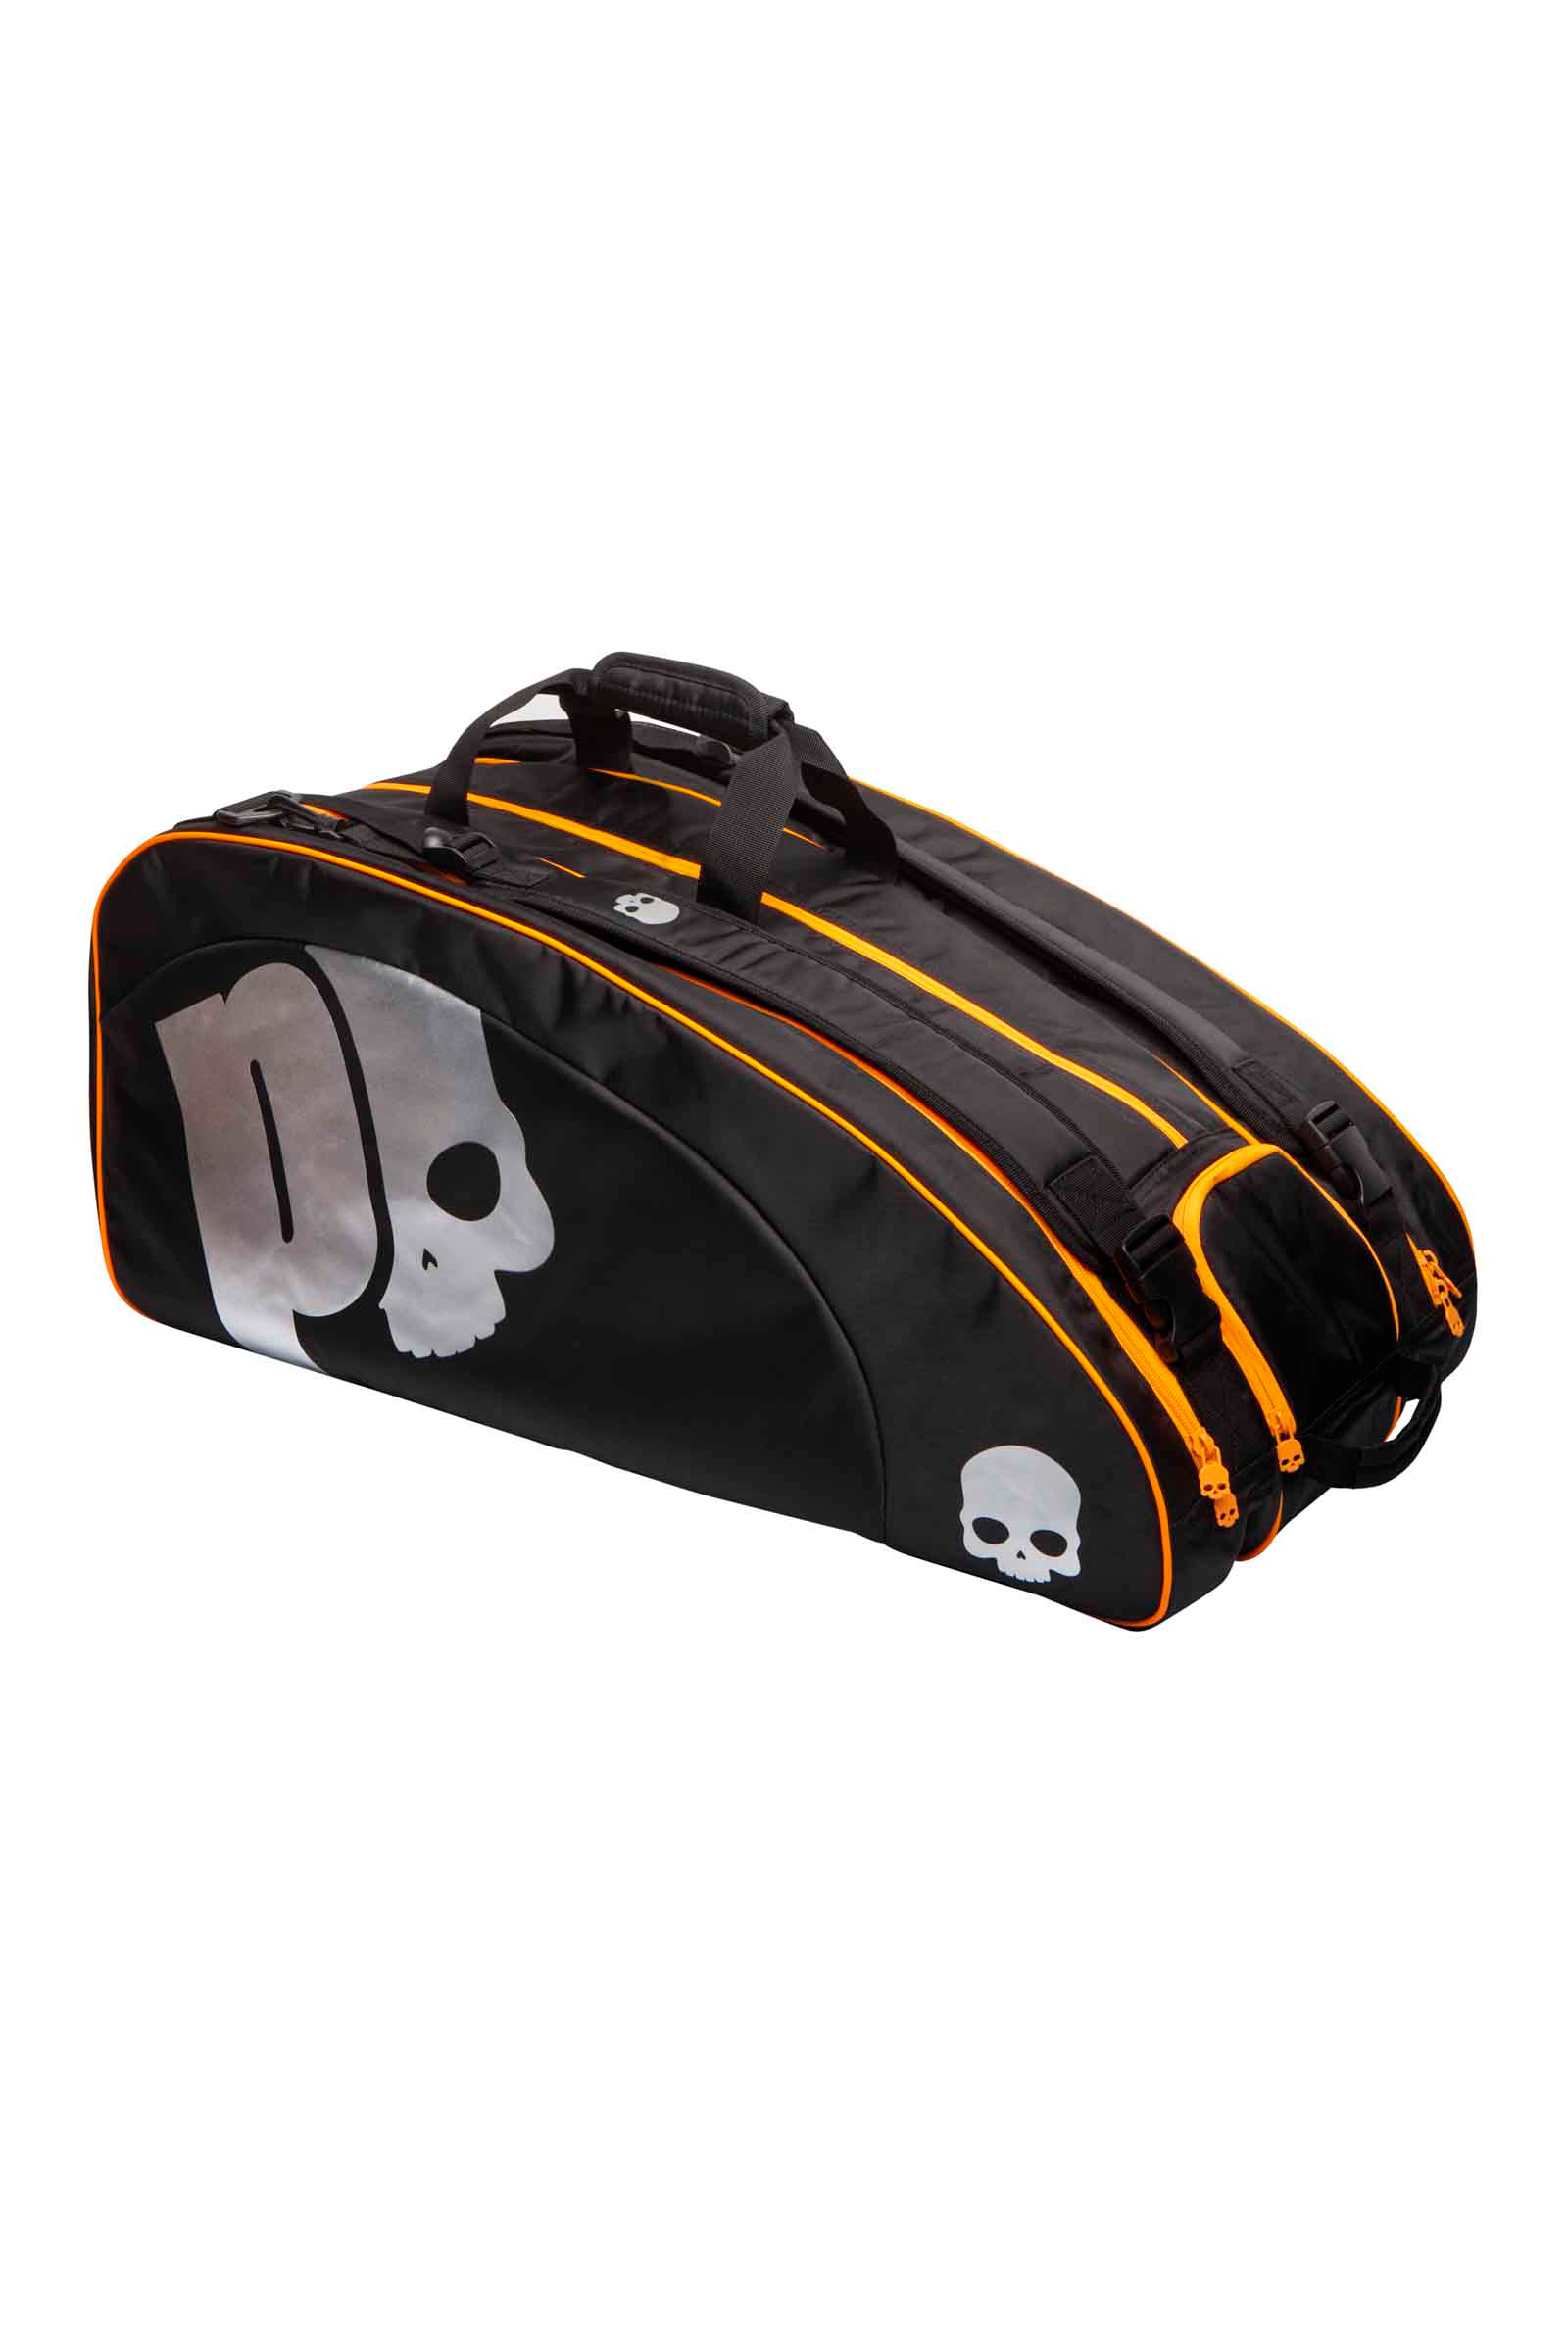 CHROME BAG PRINCE BY HYDROGEN - Accessori - Abbigliamento sportivo | Hydrogen